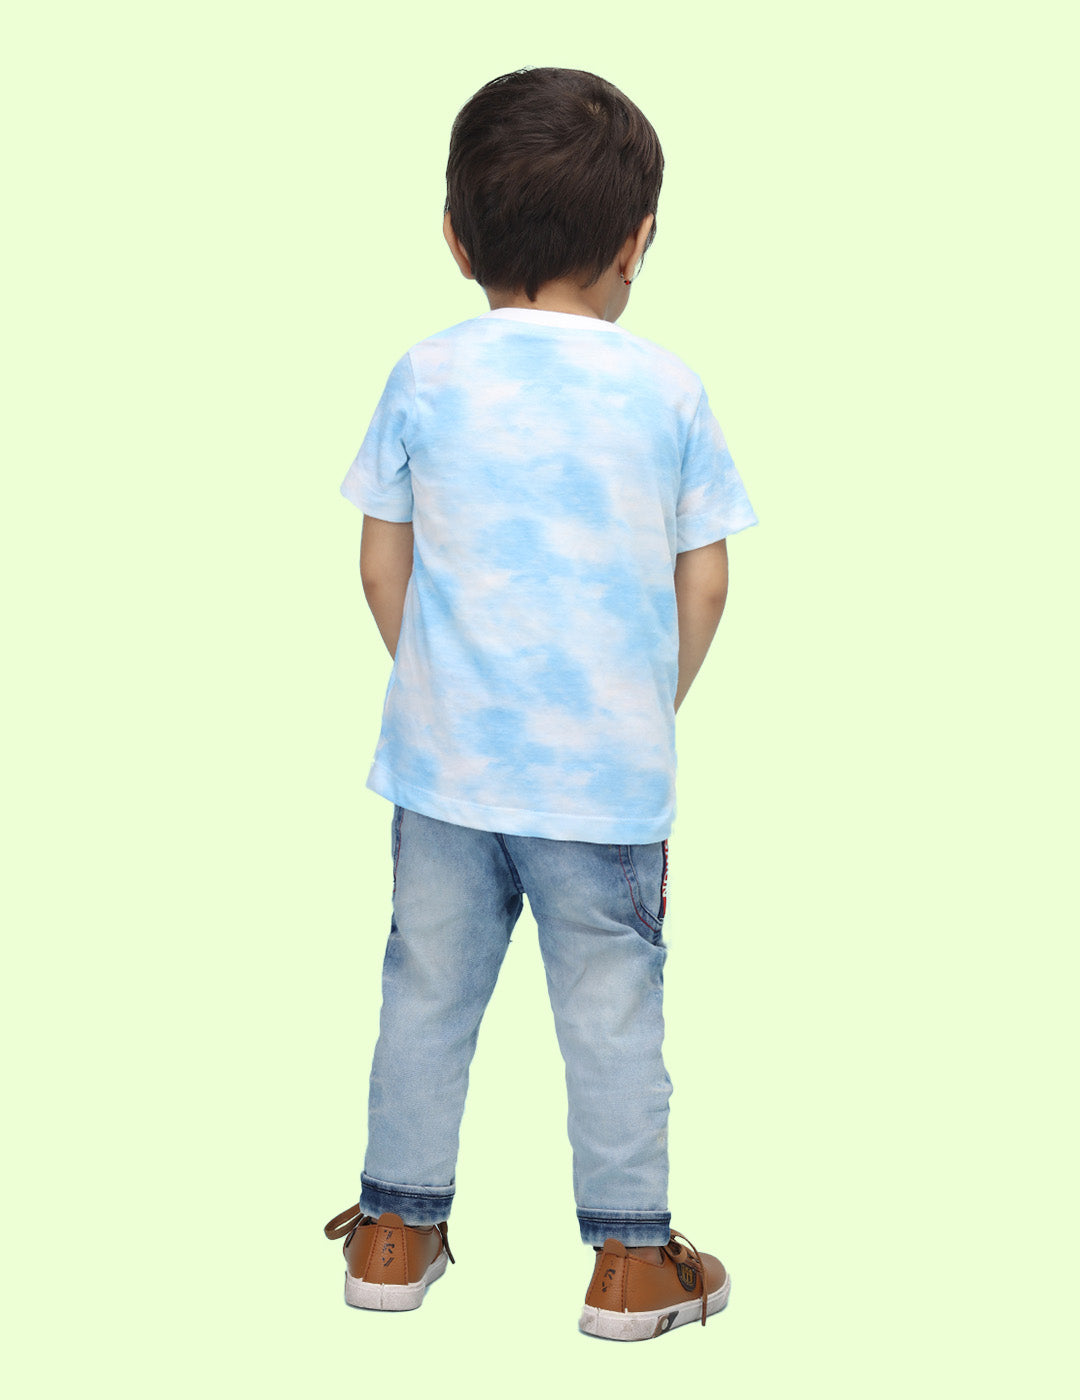 Nusyl infants blue be kind printed Tie & Dye tshirt.